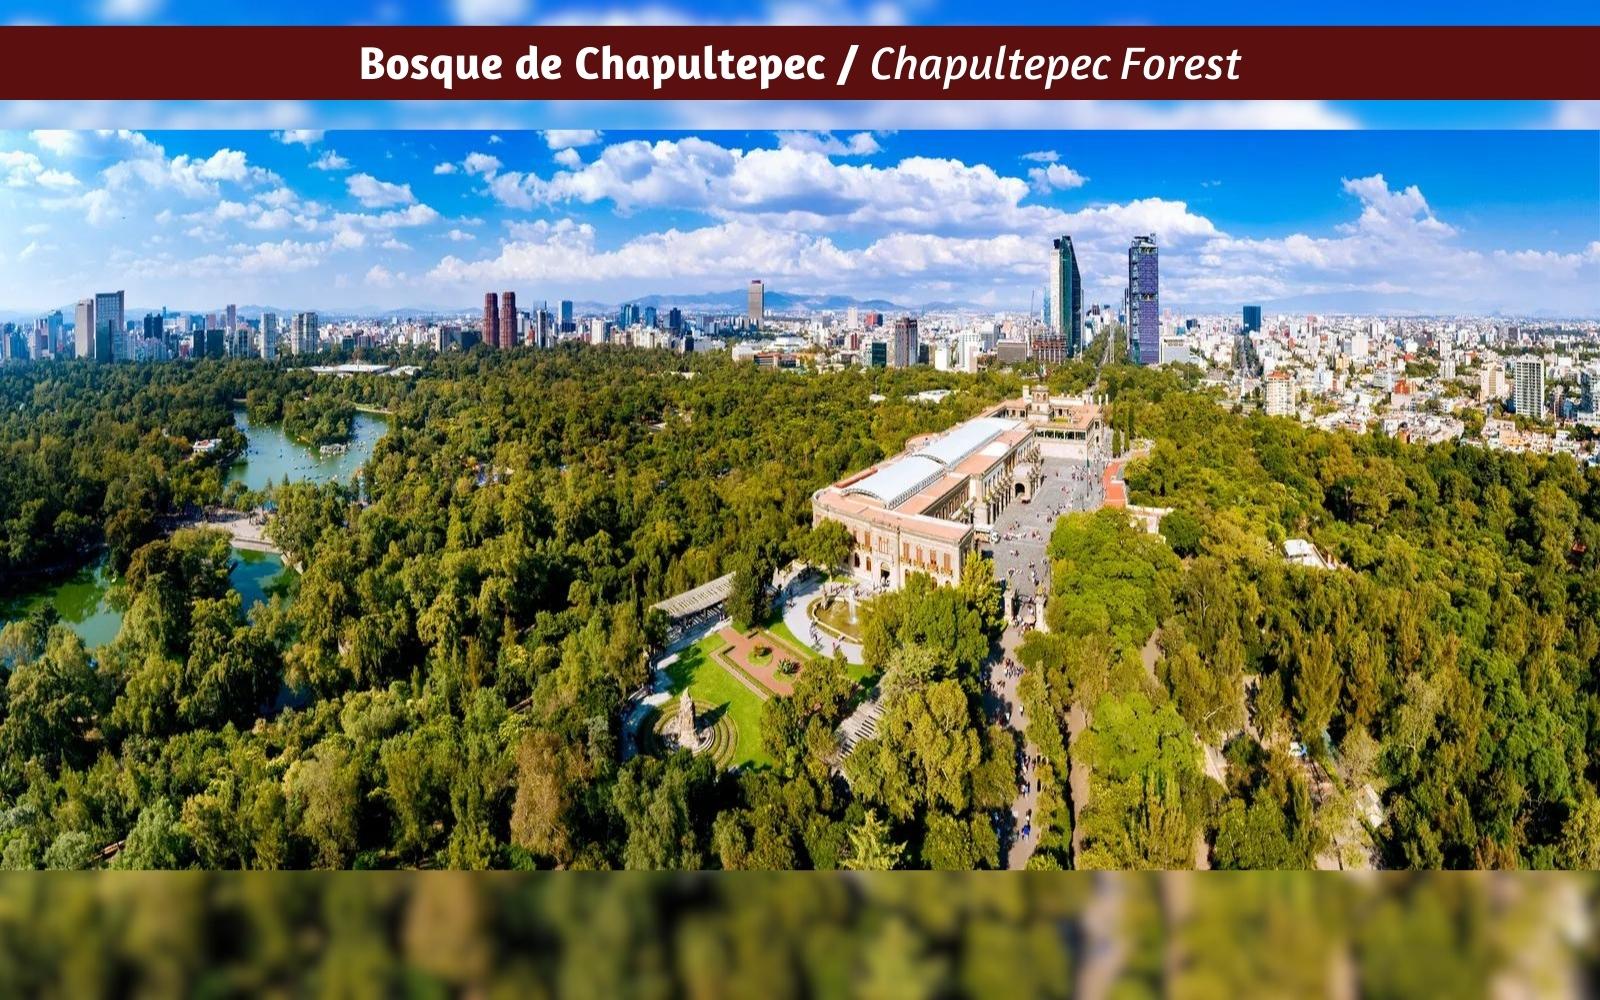 Departamento de lujo con terraza y vista al bosque de Chapultepec, altura de 3.10 metros, helipuerto, bar y restaurante, spa, gimnasio, serv